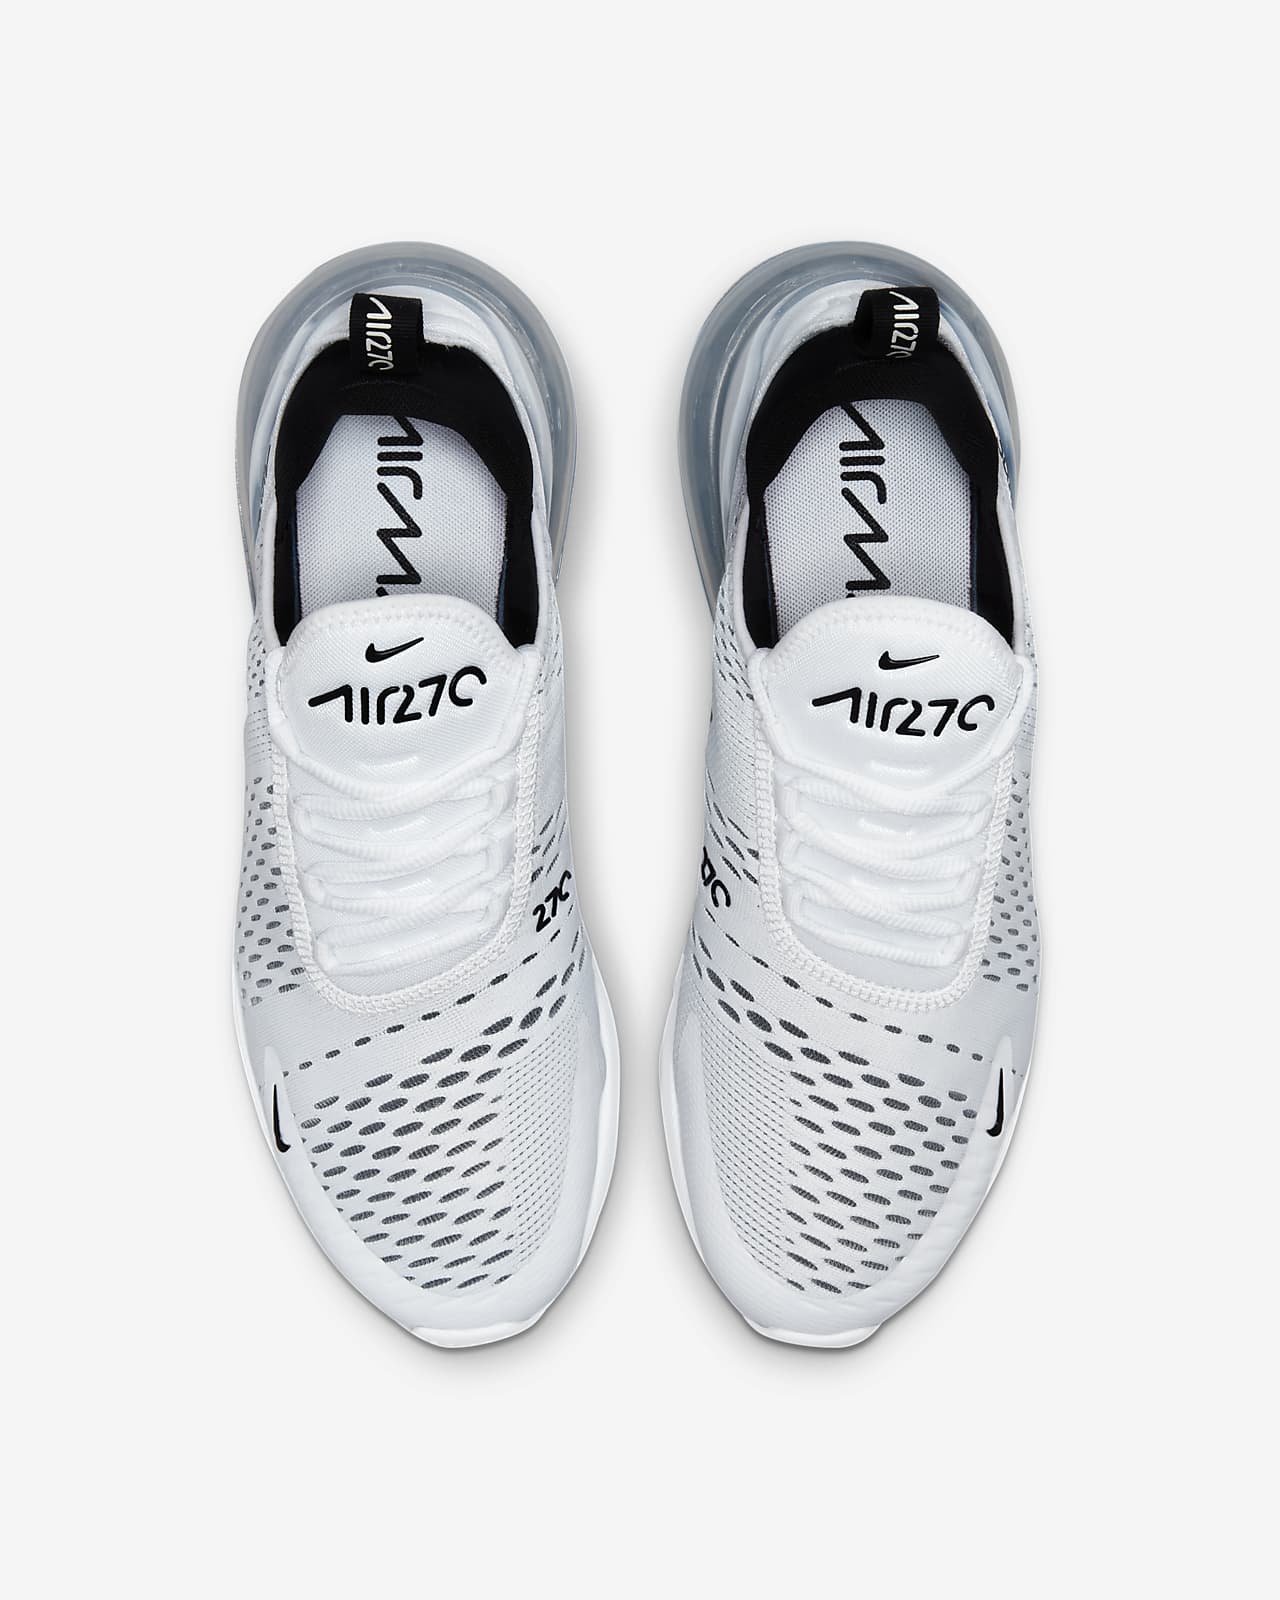 Chaussure Nike Air Max pour femme. Nike